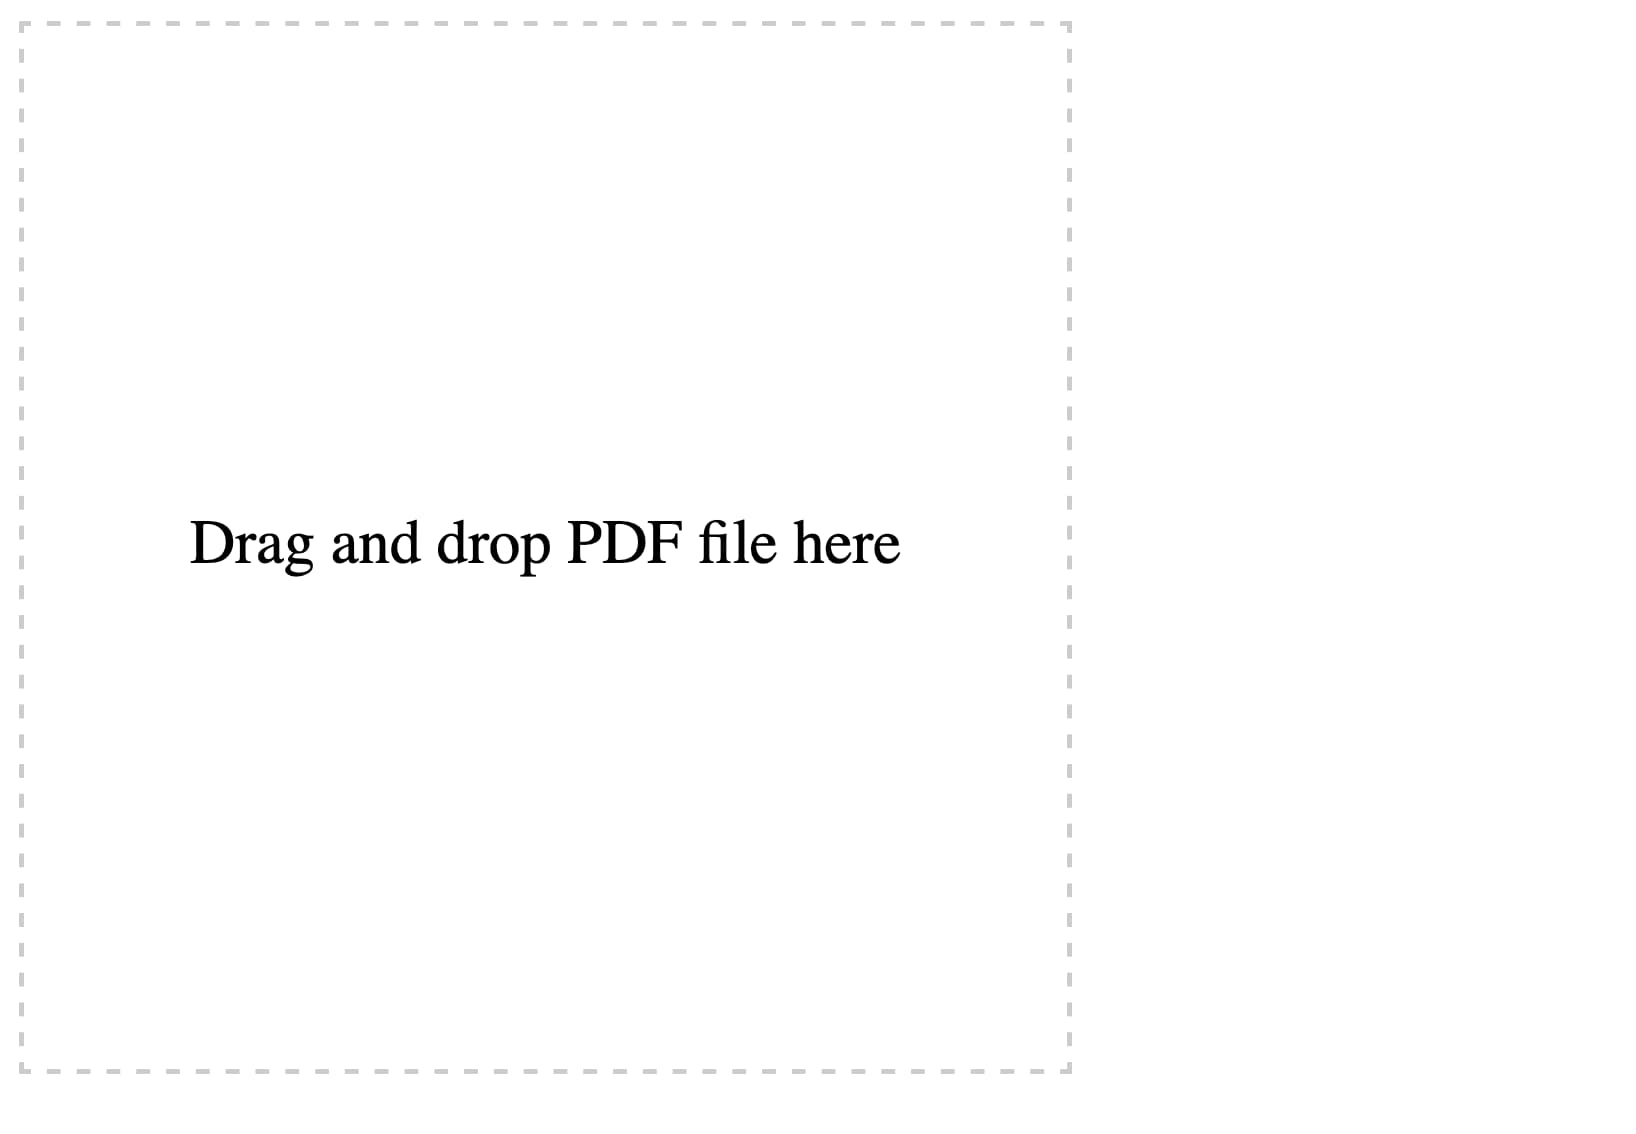 页面上有一个带点状边框的大方框，提示“请拖拽 PDF 文件至此”